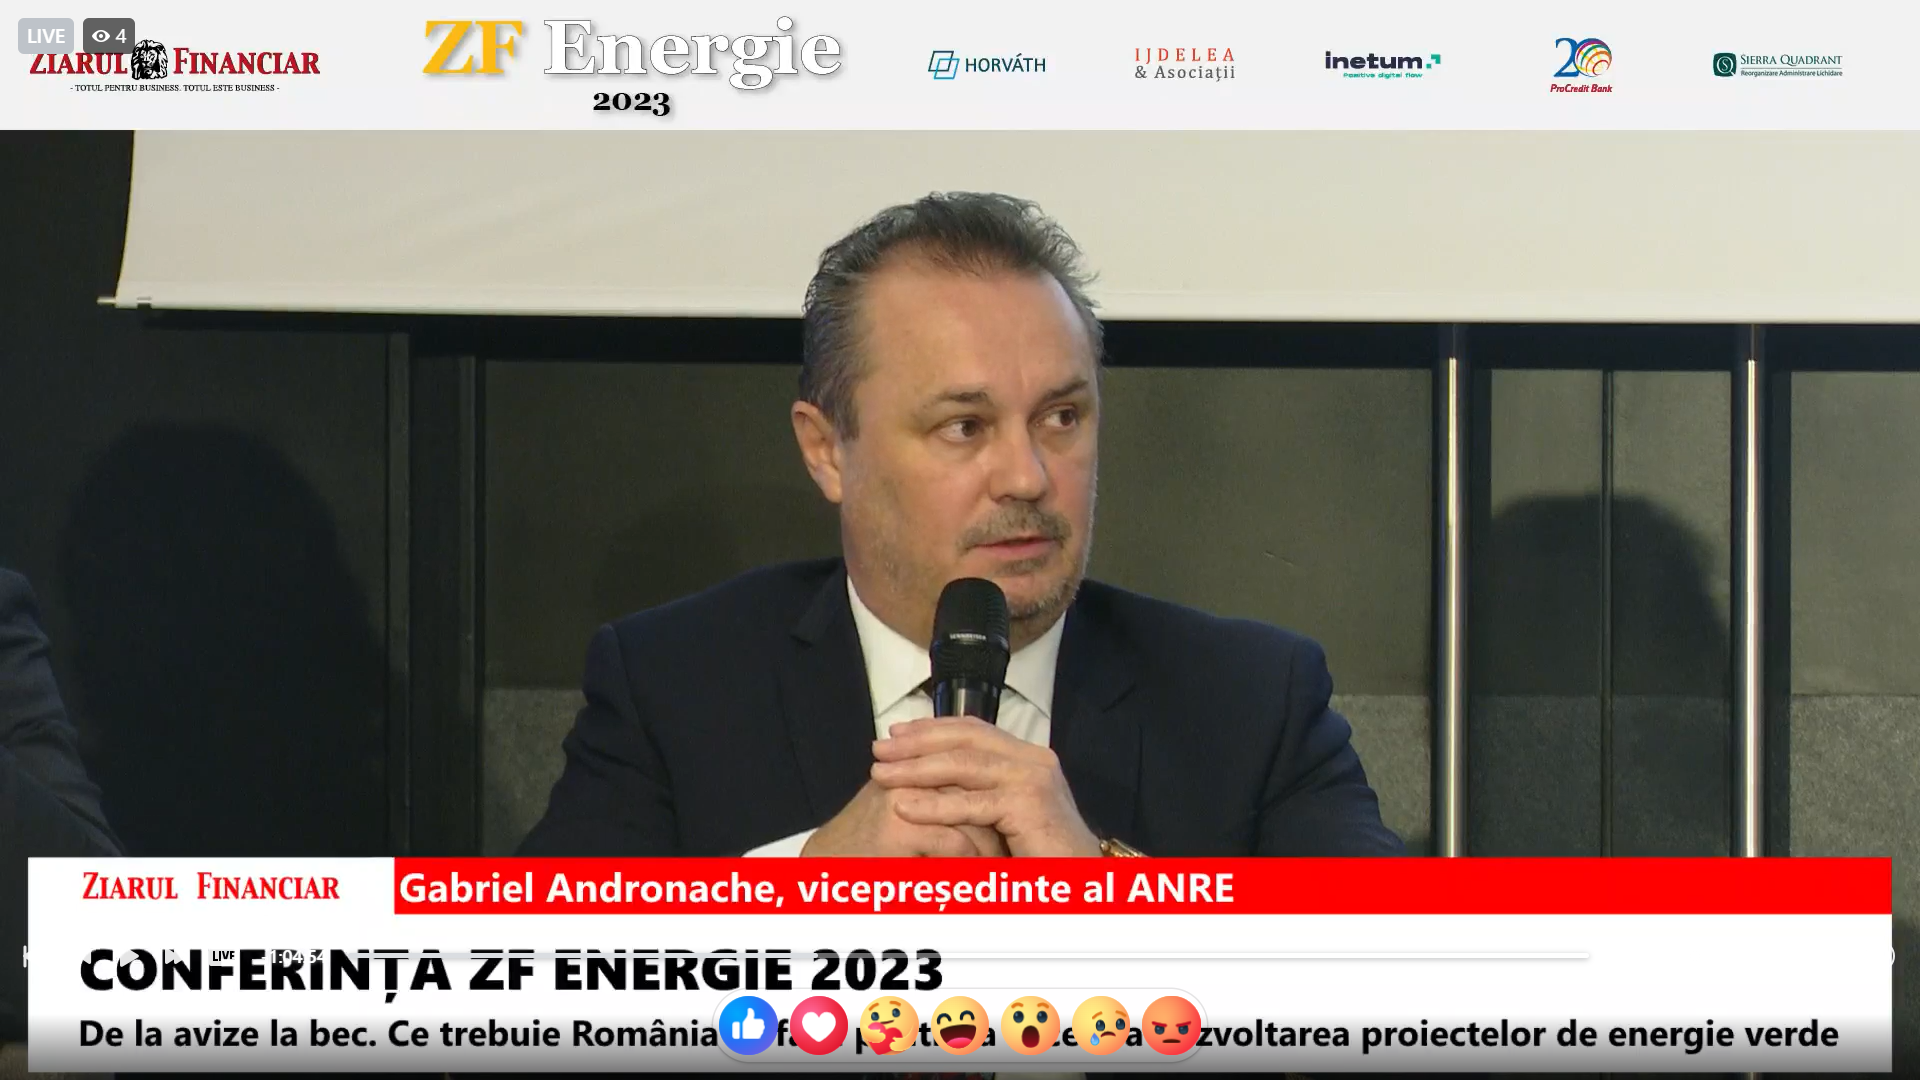 Gabriel Andronache, vicepreşedinte ANRE: Avem 97.000 de prosumatori acum, cu o capacitate instalată de 1.225 MW. Am început anul cu 44.000 de prosumatori şi aveau o capacitate de 478 MW. Ne aşteptăm ca, până la finalul anului, să ajungem în jur de 1.500 MW